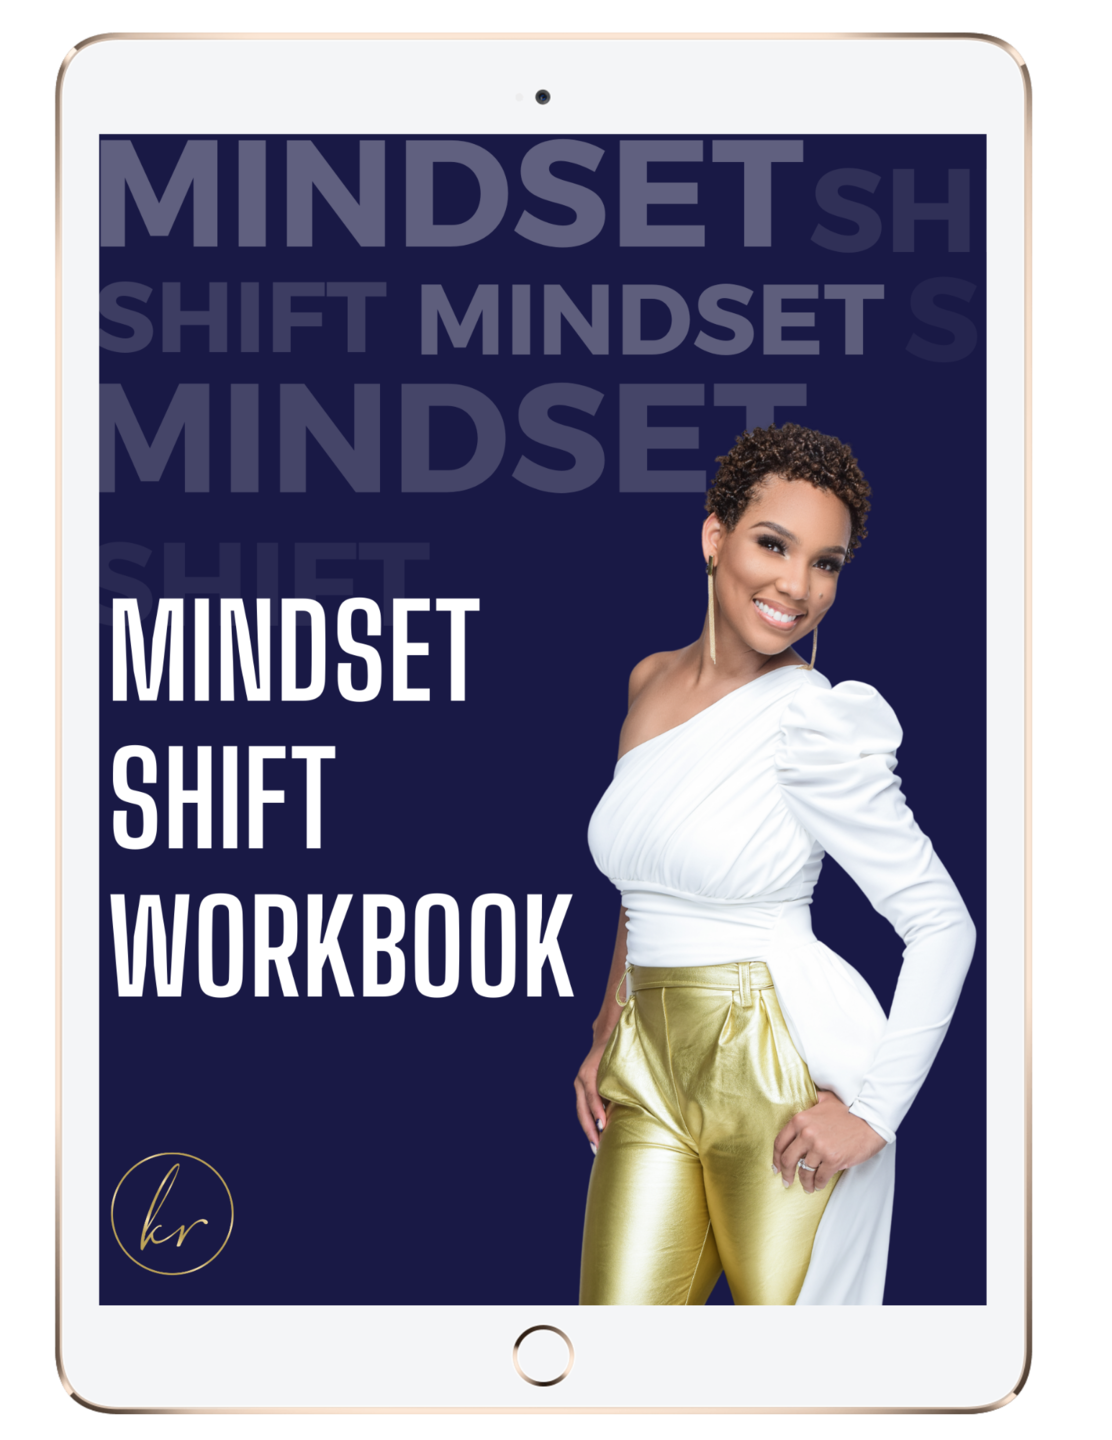 The Mindset Shift Challenge